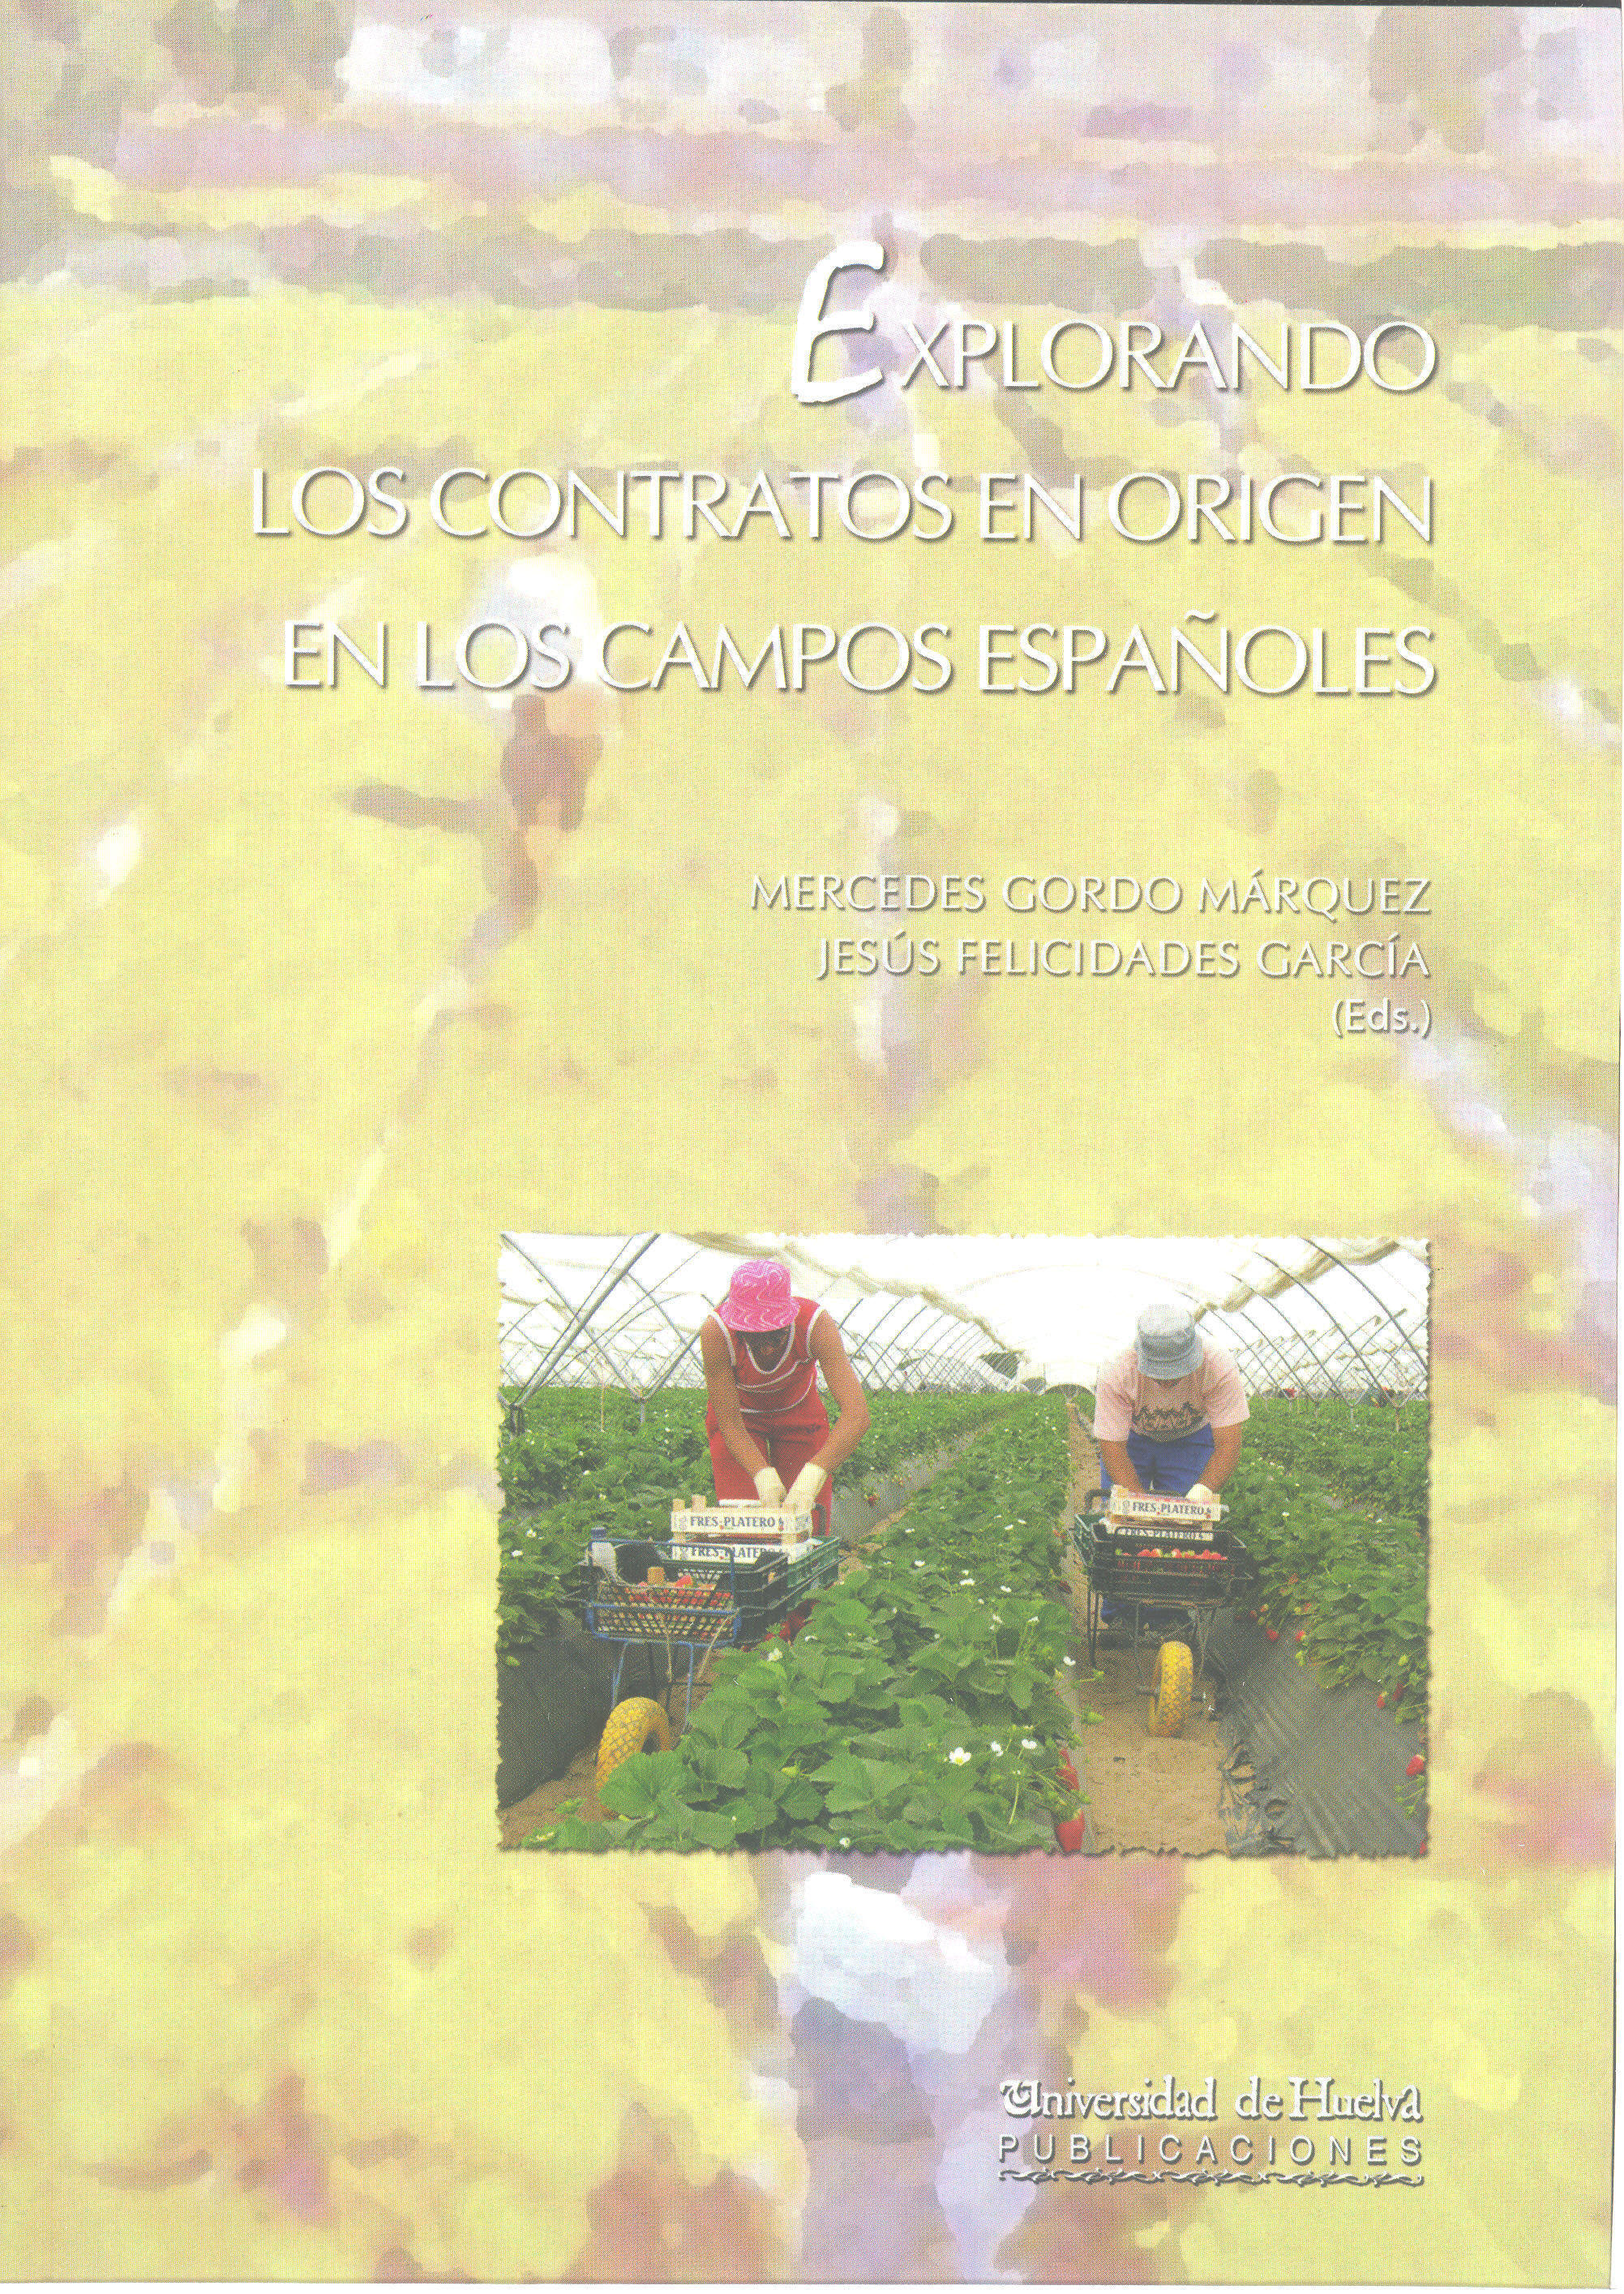 Imagen de portada del libro Explorando los contratos en origen en los campos españoles